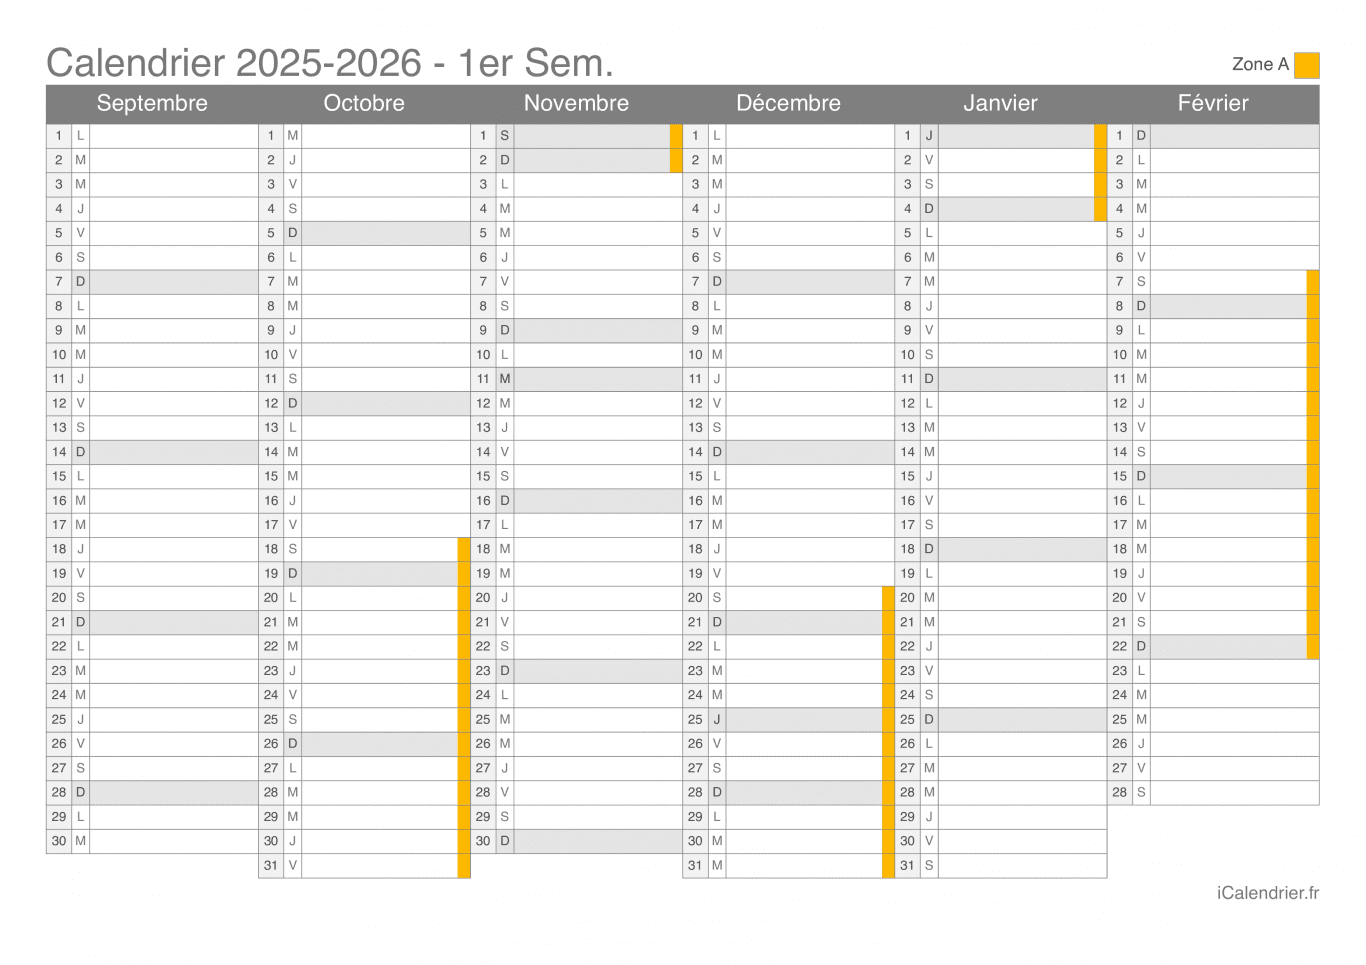 Calendrier des vacances scolaires 2025-2026 par semestre de la zone A